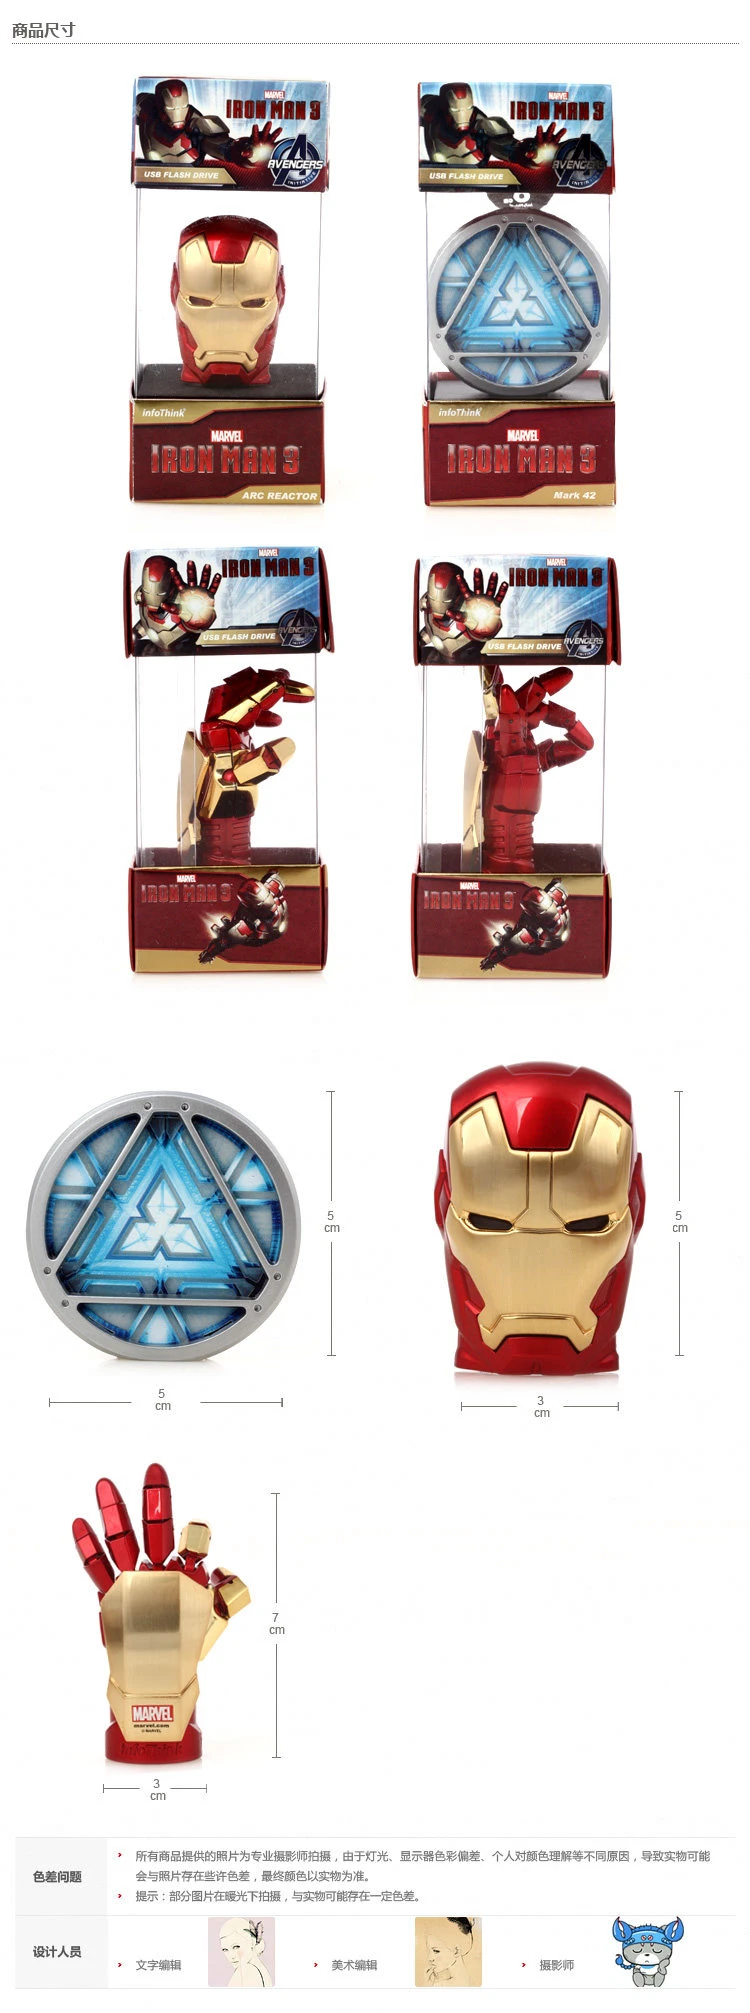 Metal Iron Man Helmet Design 32GB USB Flash Drive